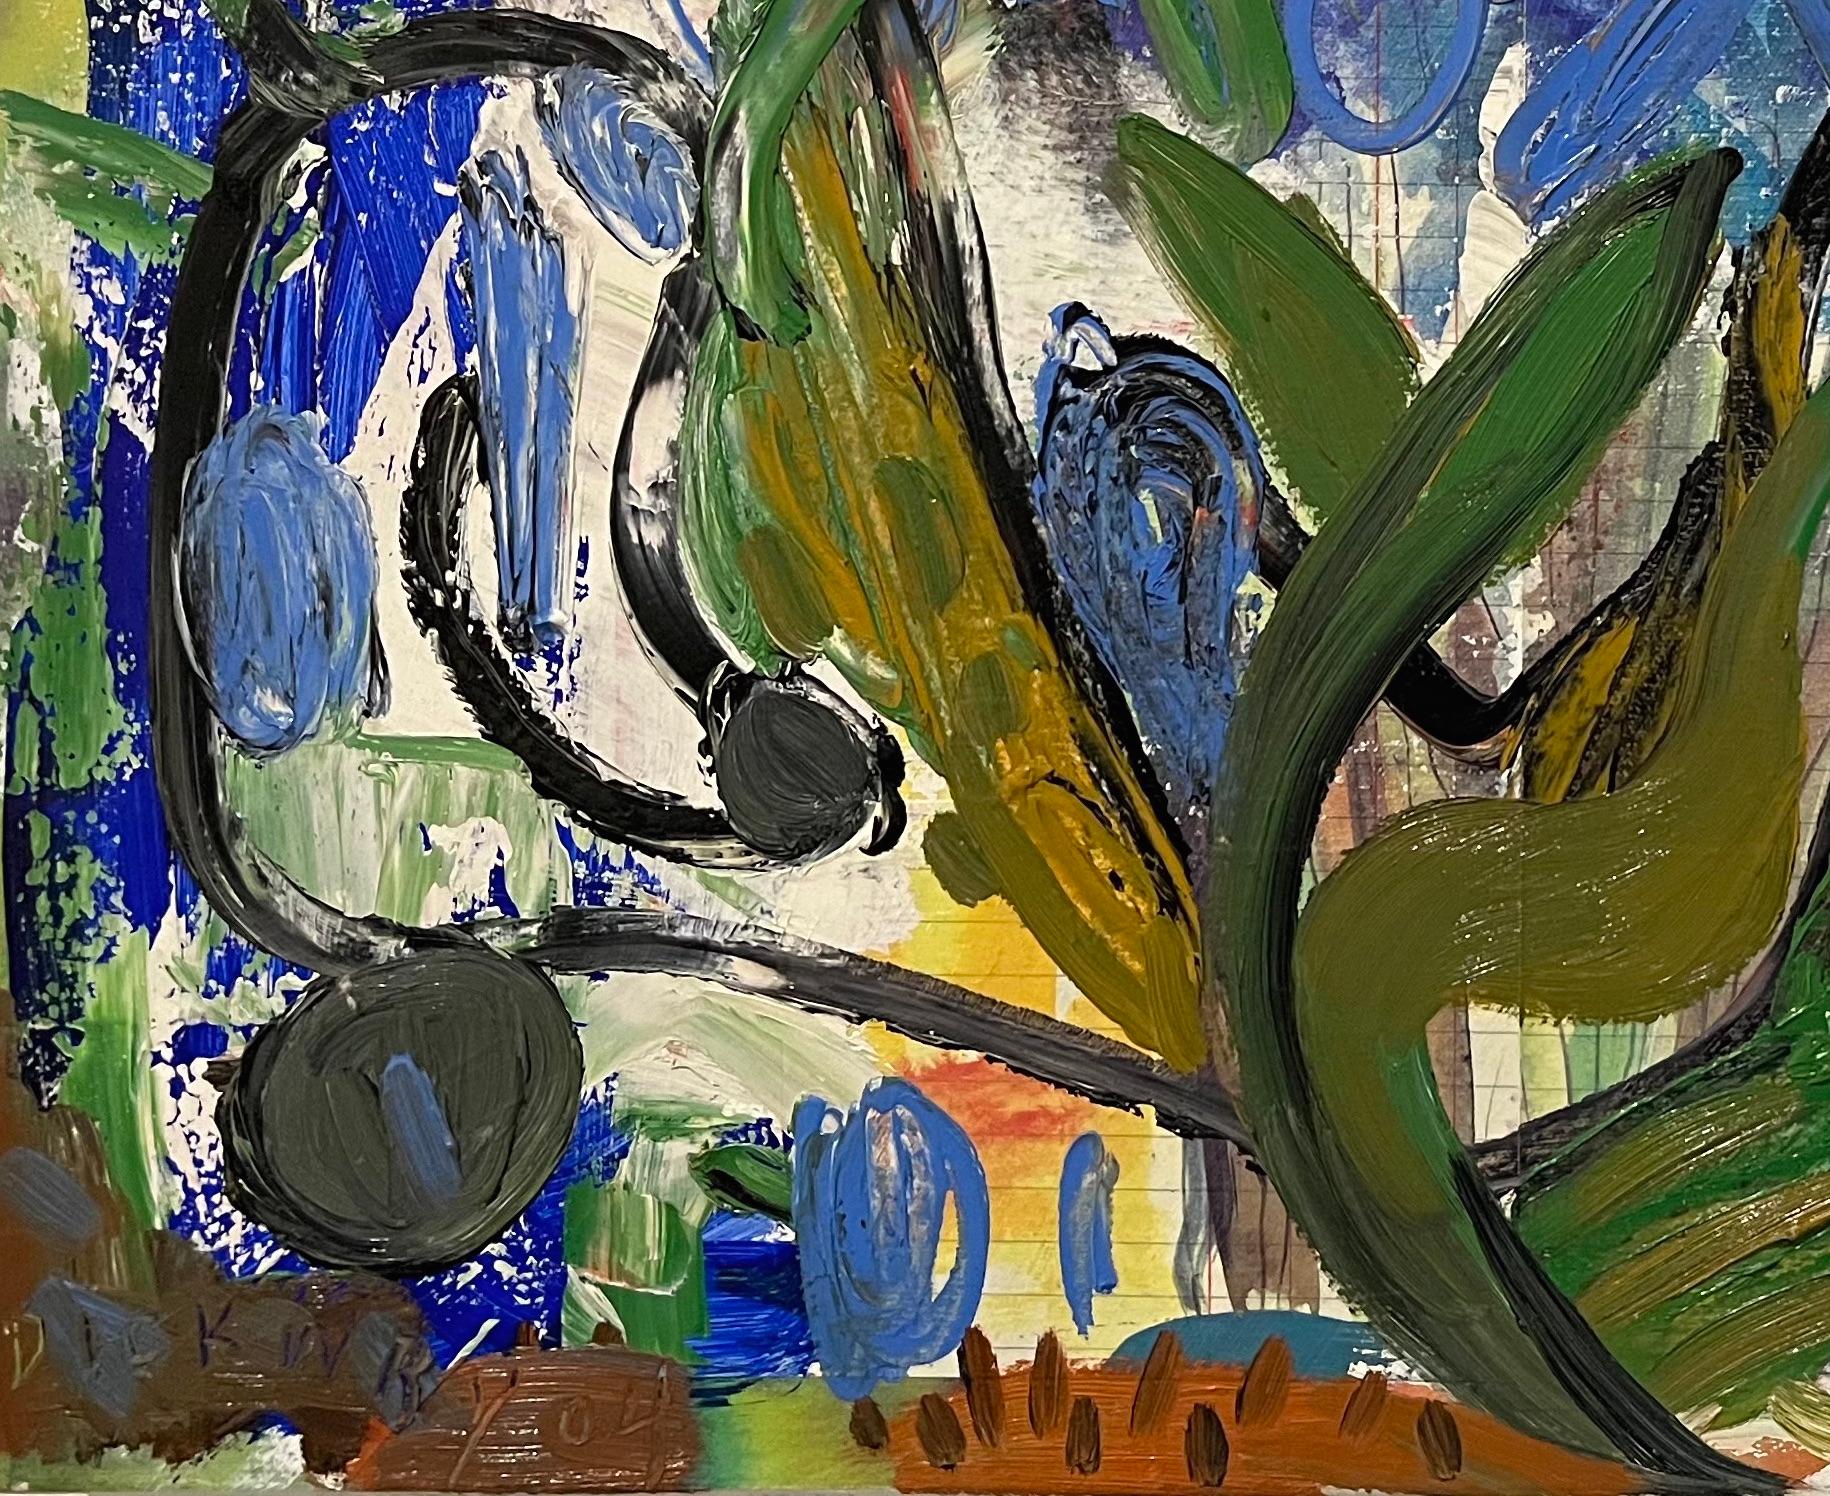 Cette œuvre vibrante de Dick Wray, artiste de Houston aujourd'hui décédé, est une peinture à l'huile abstraite dans le style de l'expressionnisme abstrait. D'épaisses couches de peinture favorisent une tactilité remarquable que l'on retrouve